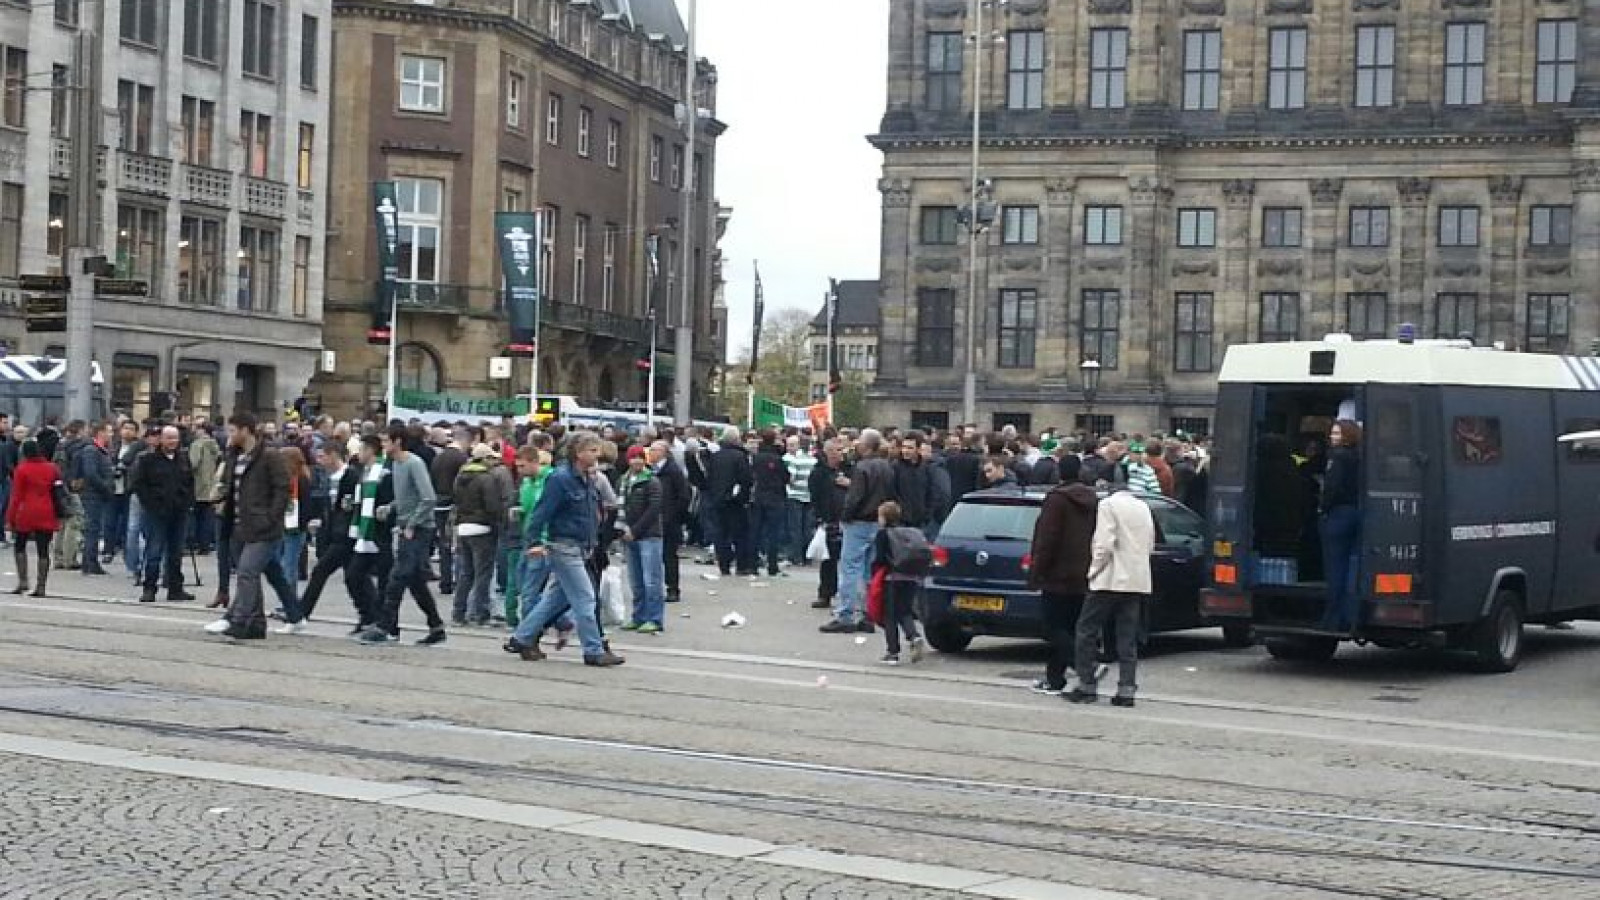 Celtic: 'Supporters, wees voorzichtig in binnenstad'